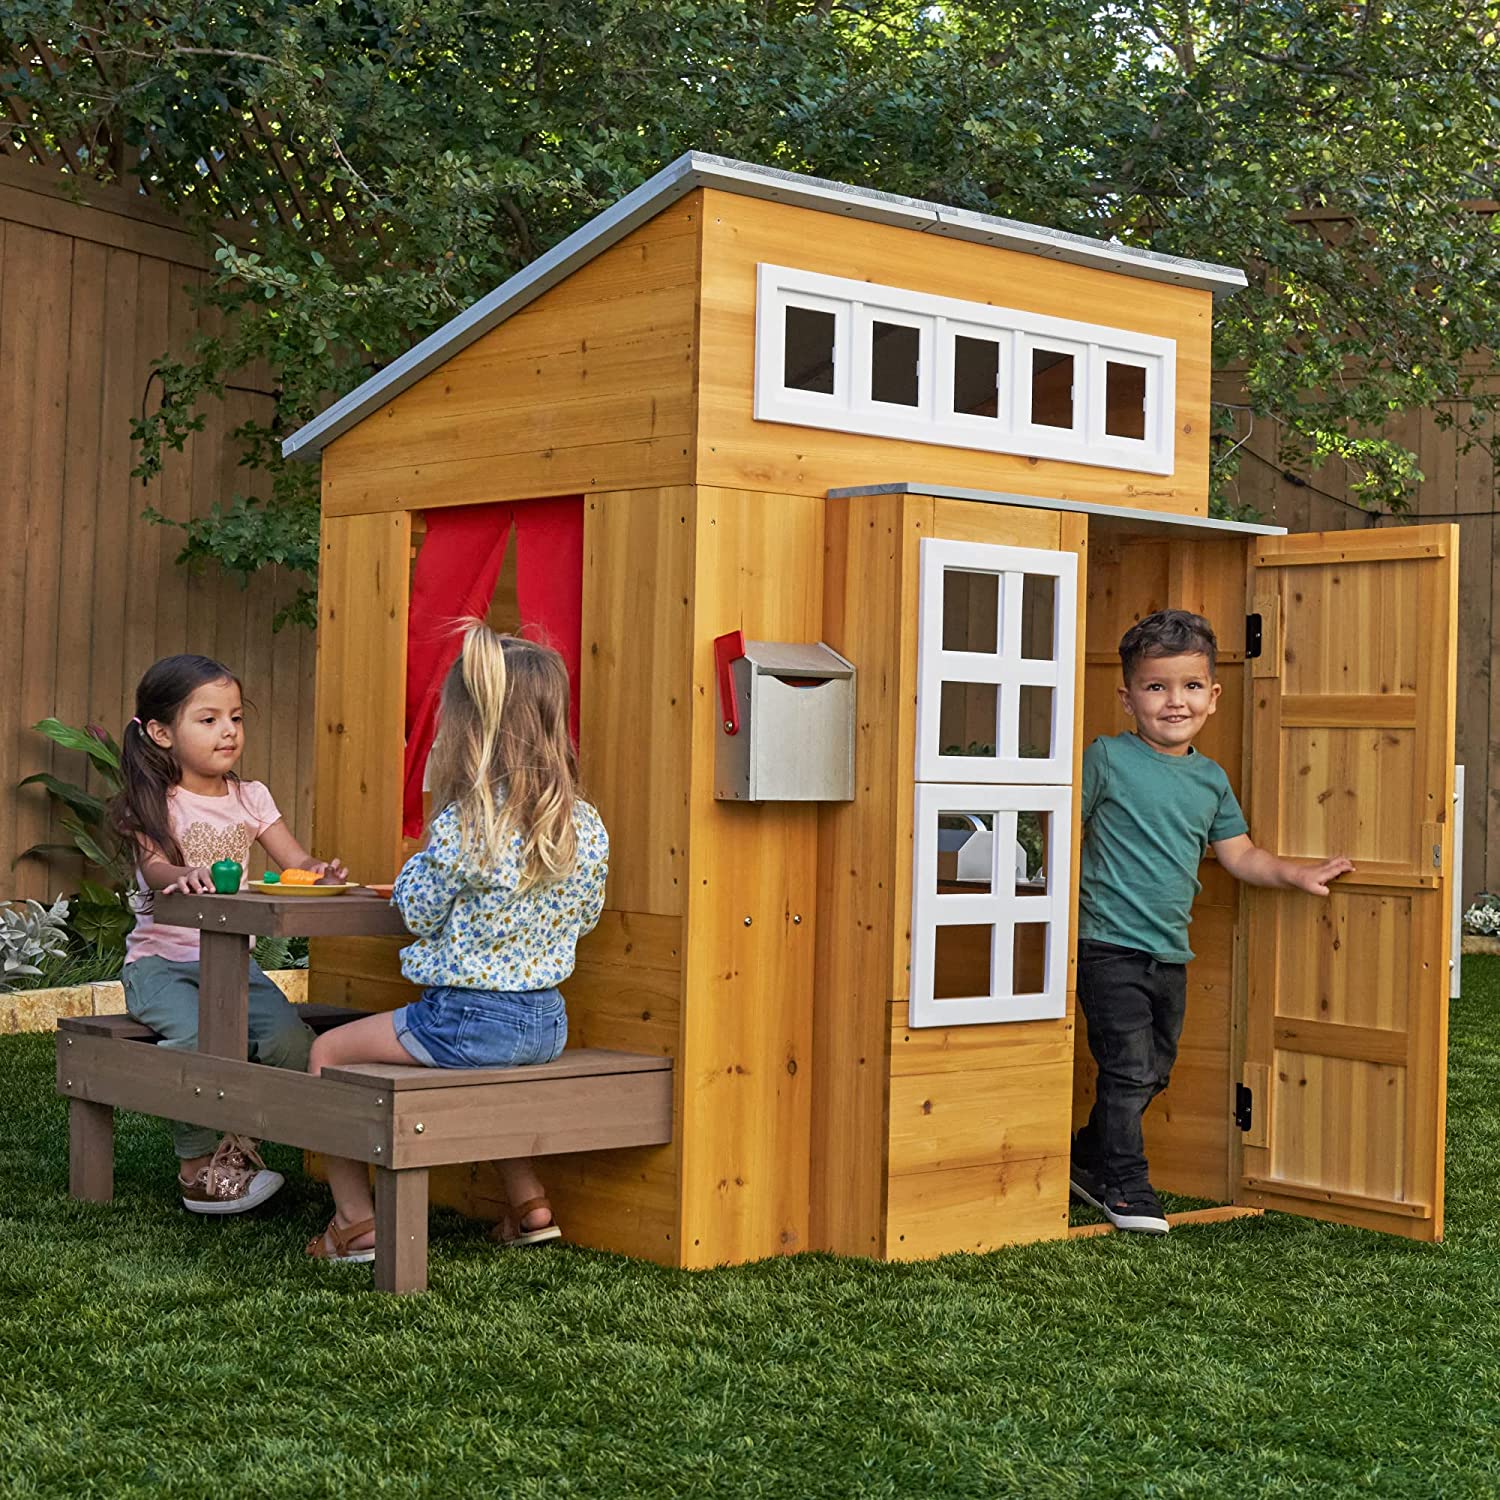 KidKraft Modern Outdoor Wooden Playhouse $244.99, 46% off @ Amazon